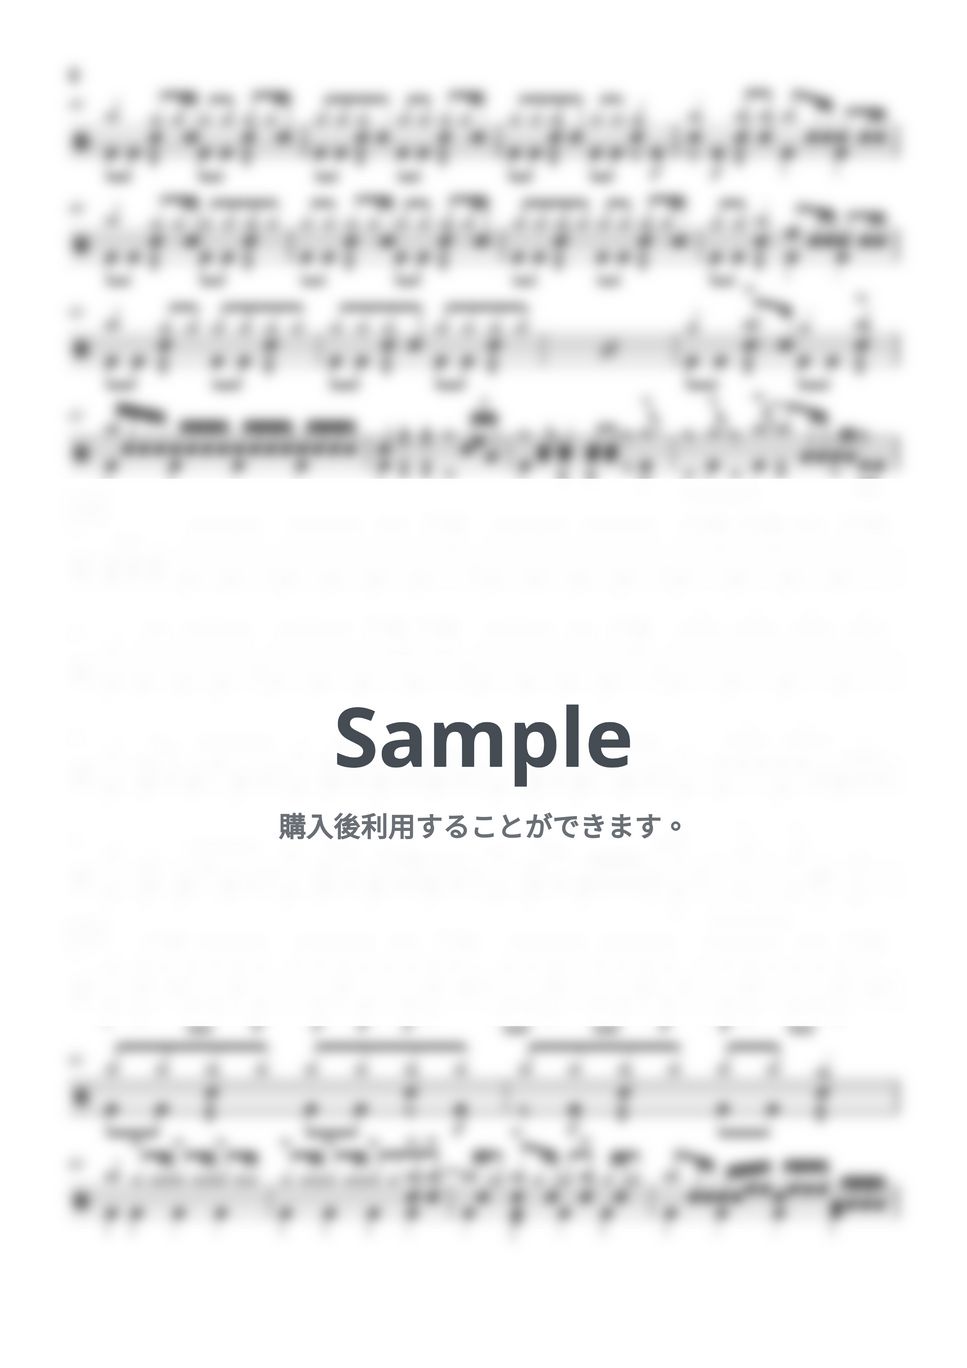 UNISON SQUARE GARDEN - ギャクテンサヨナラ (ドラム譜面) by cabal